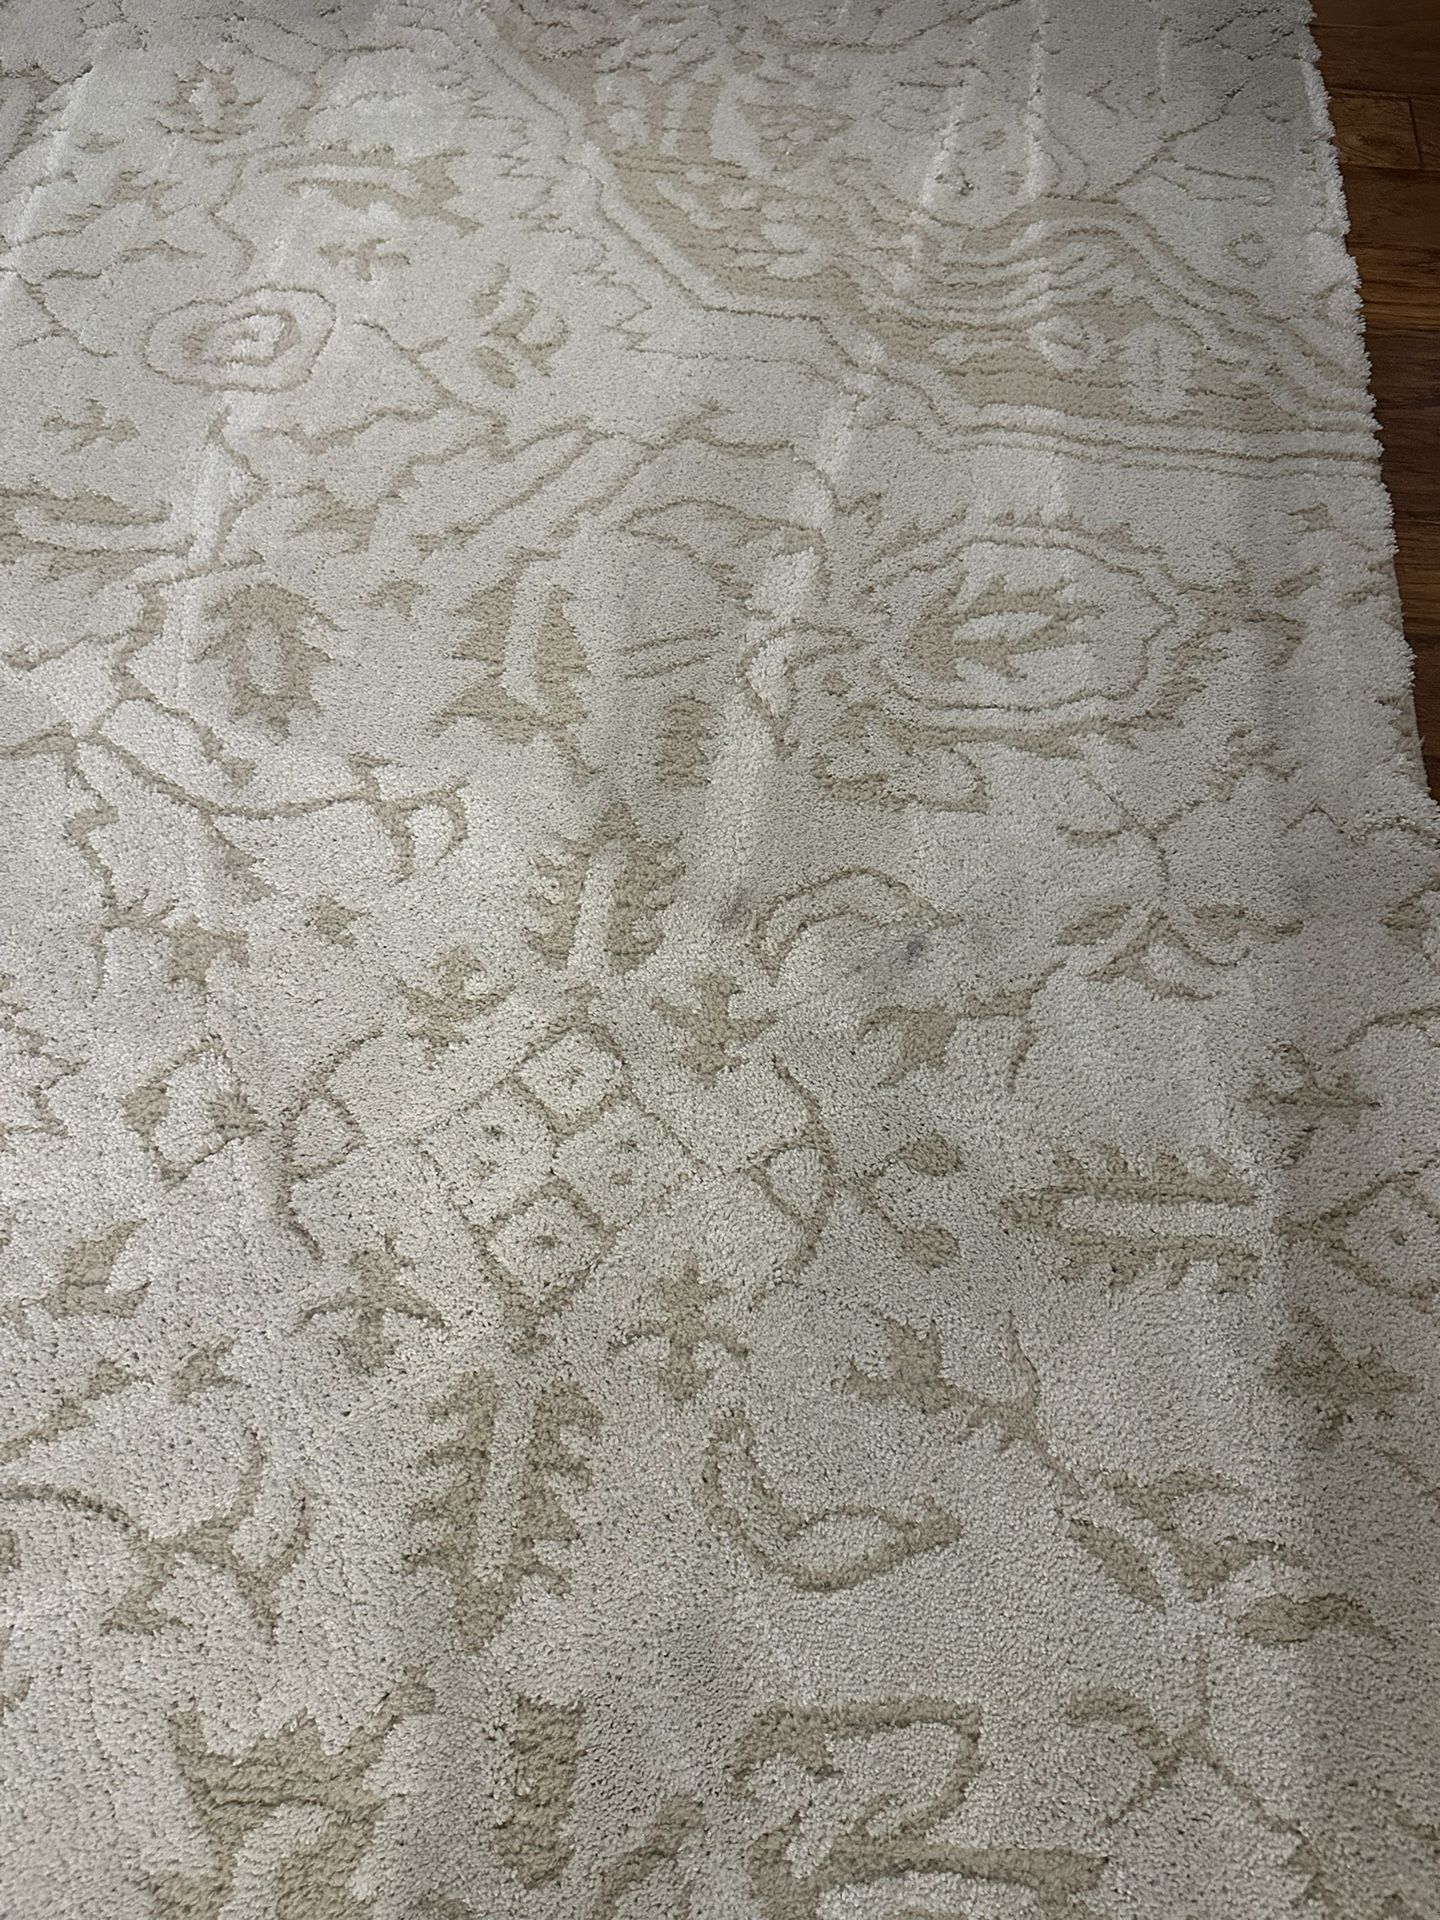 10x14  Area rug Cream/beige 